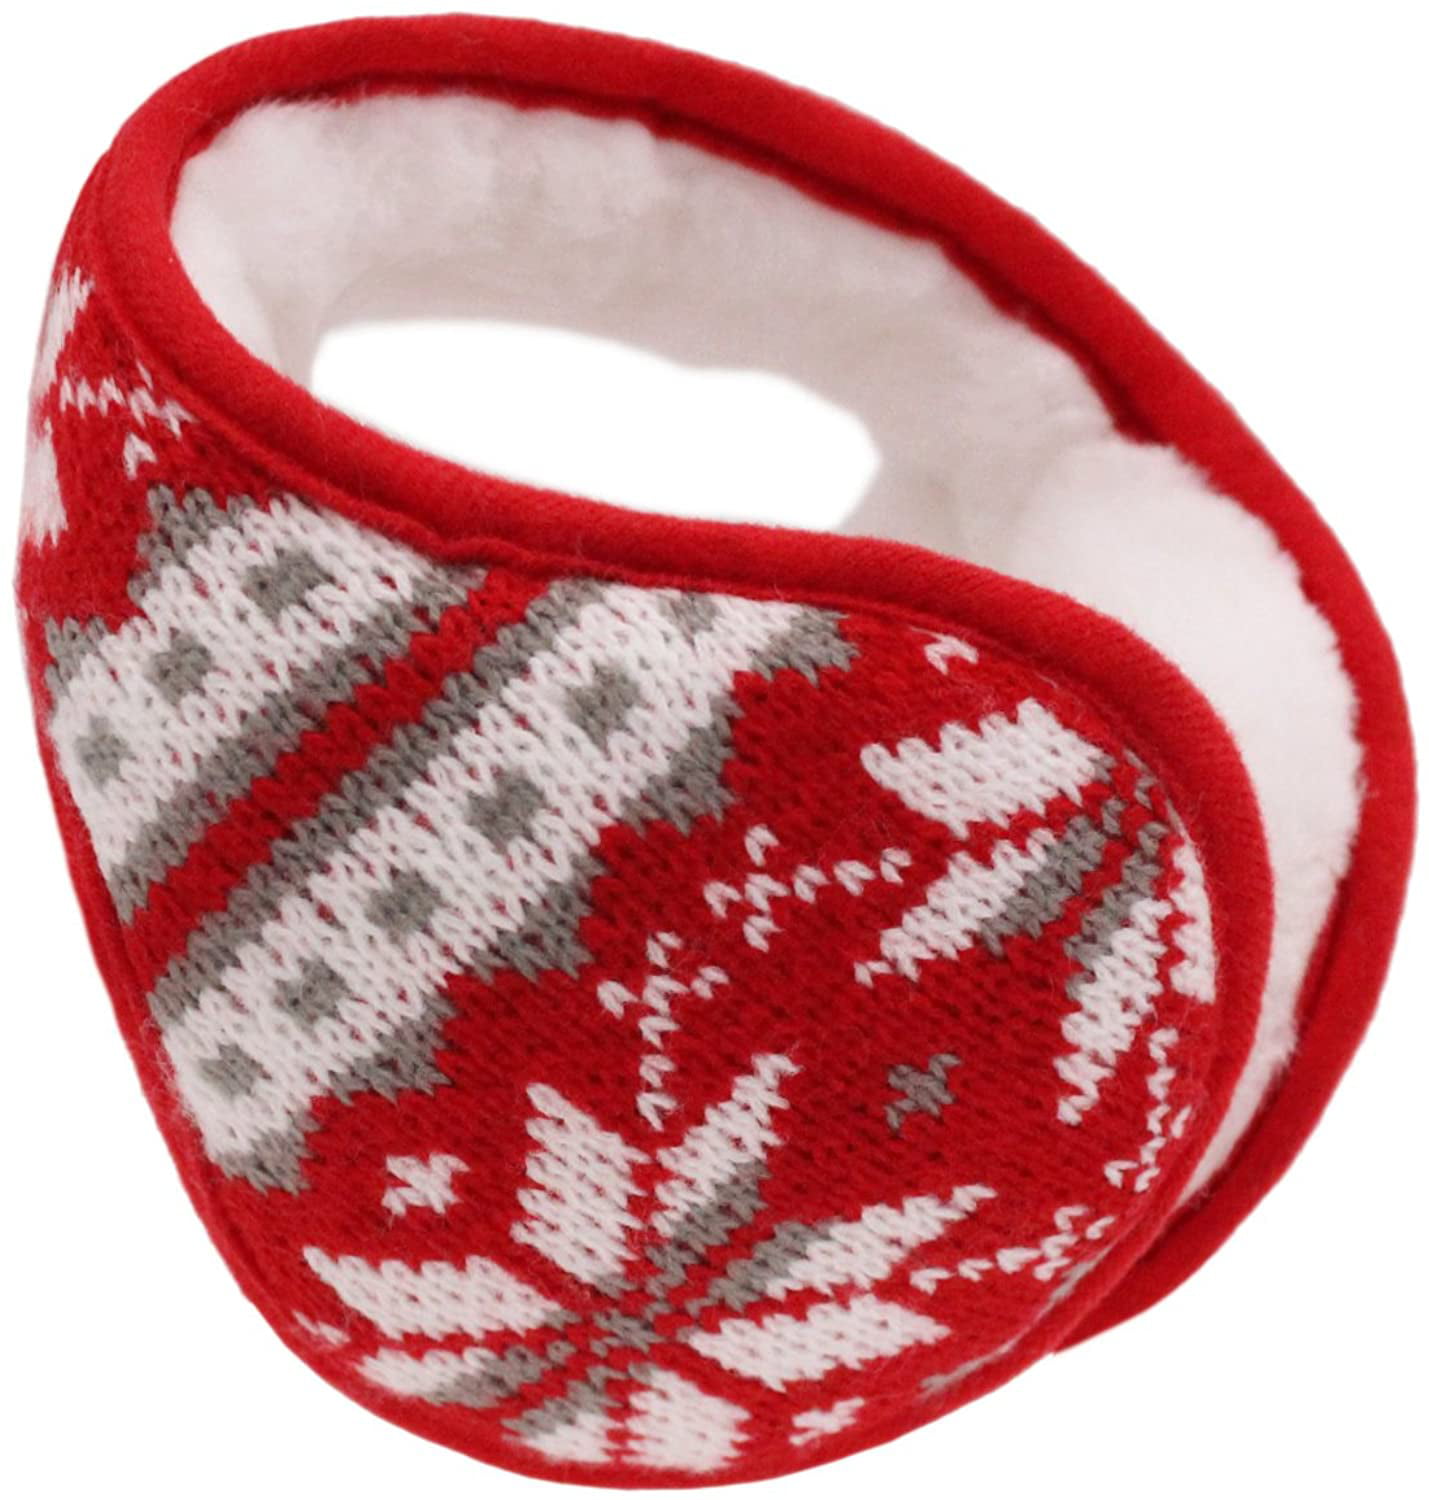 Iuway Unisex Knitted Foldable EarMuffs Fleece Lined Warm Winter Outdoor EarMuffs